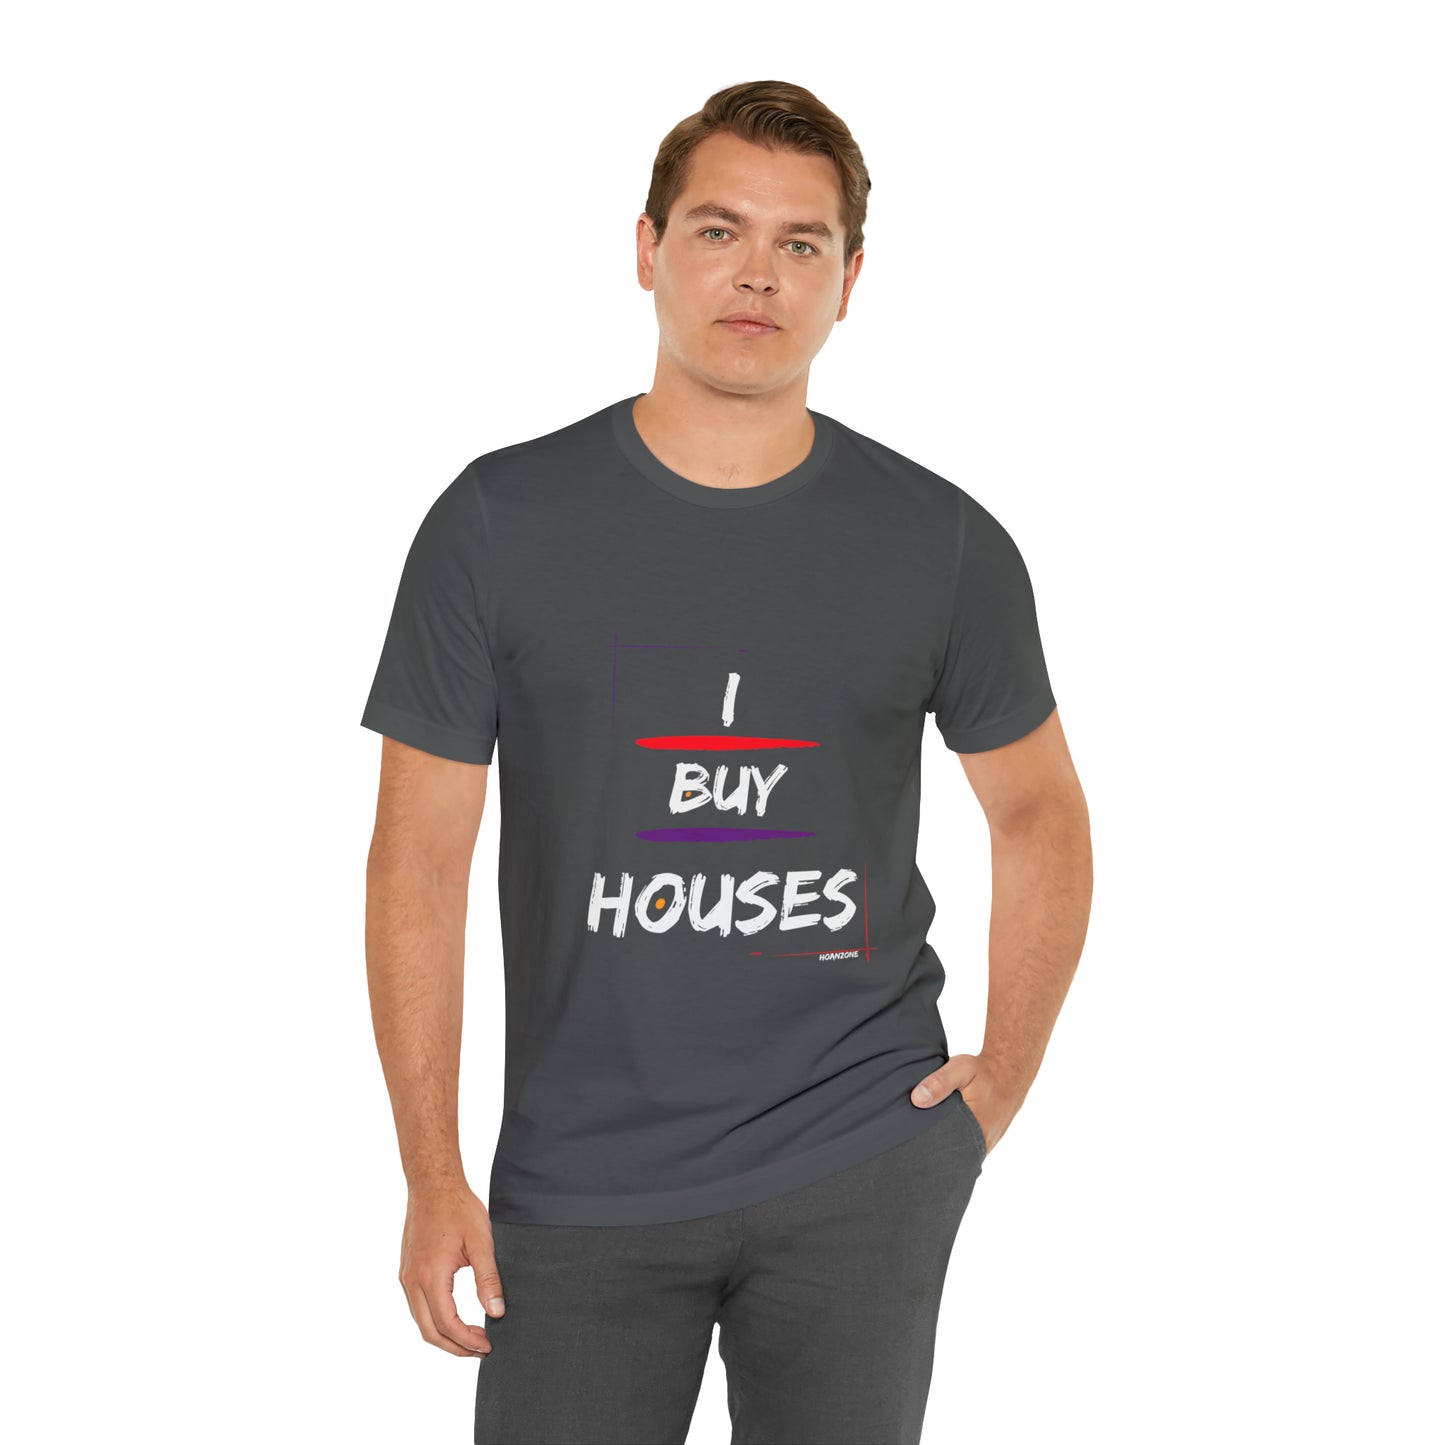 I Buy Houses